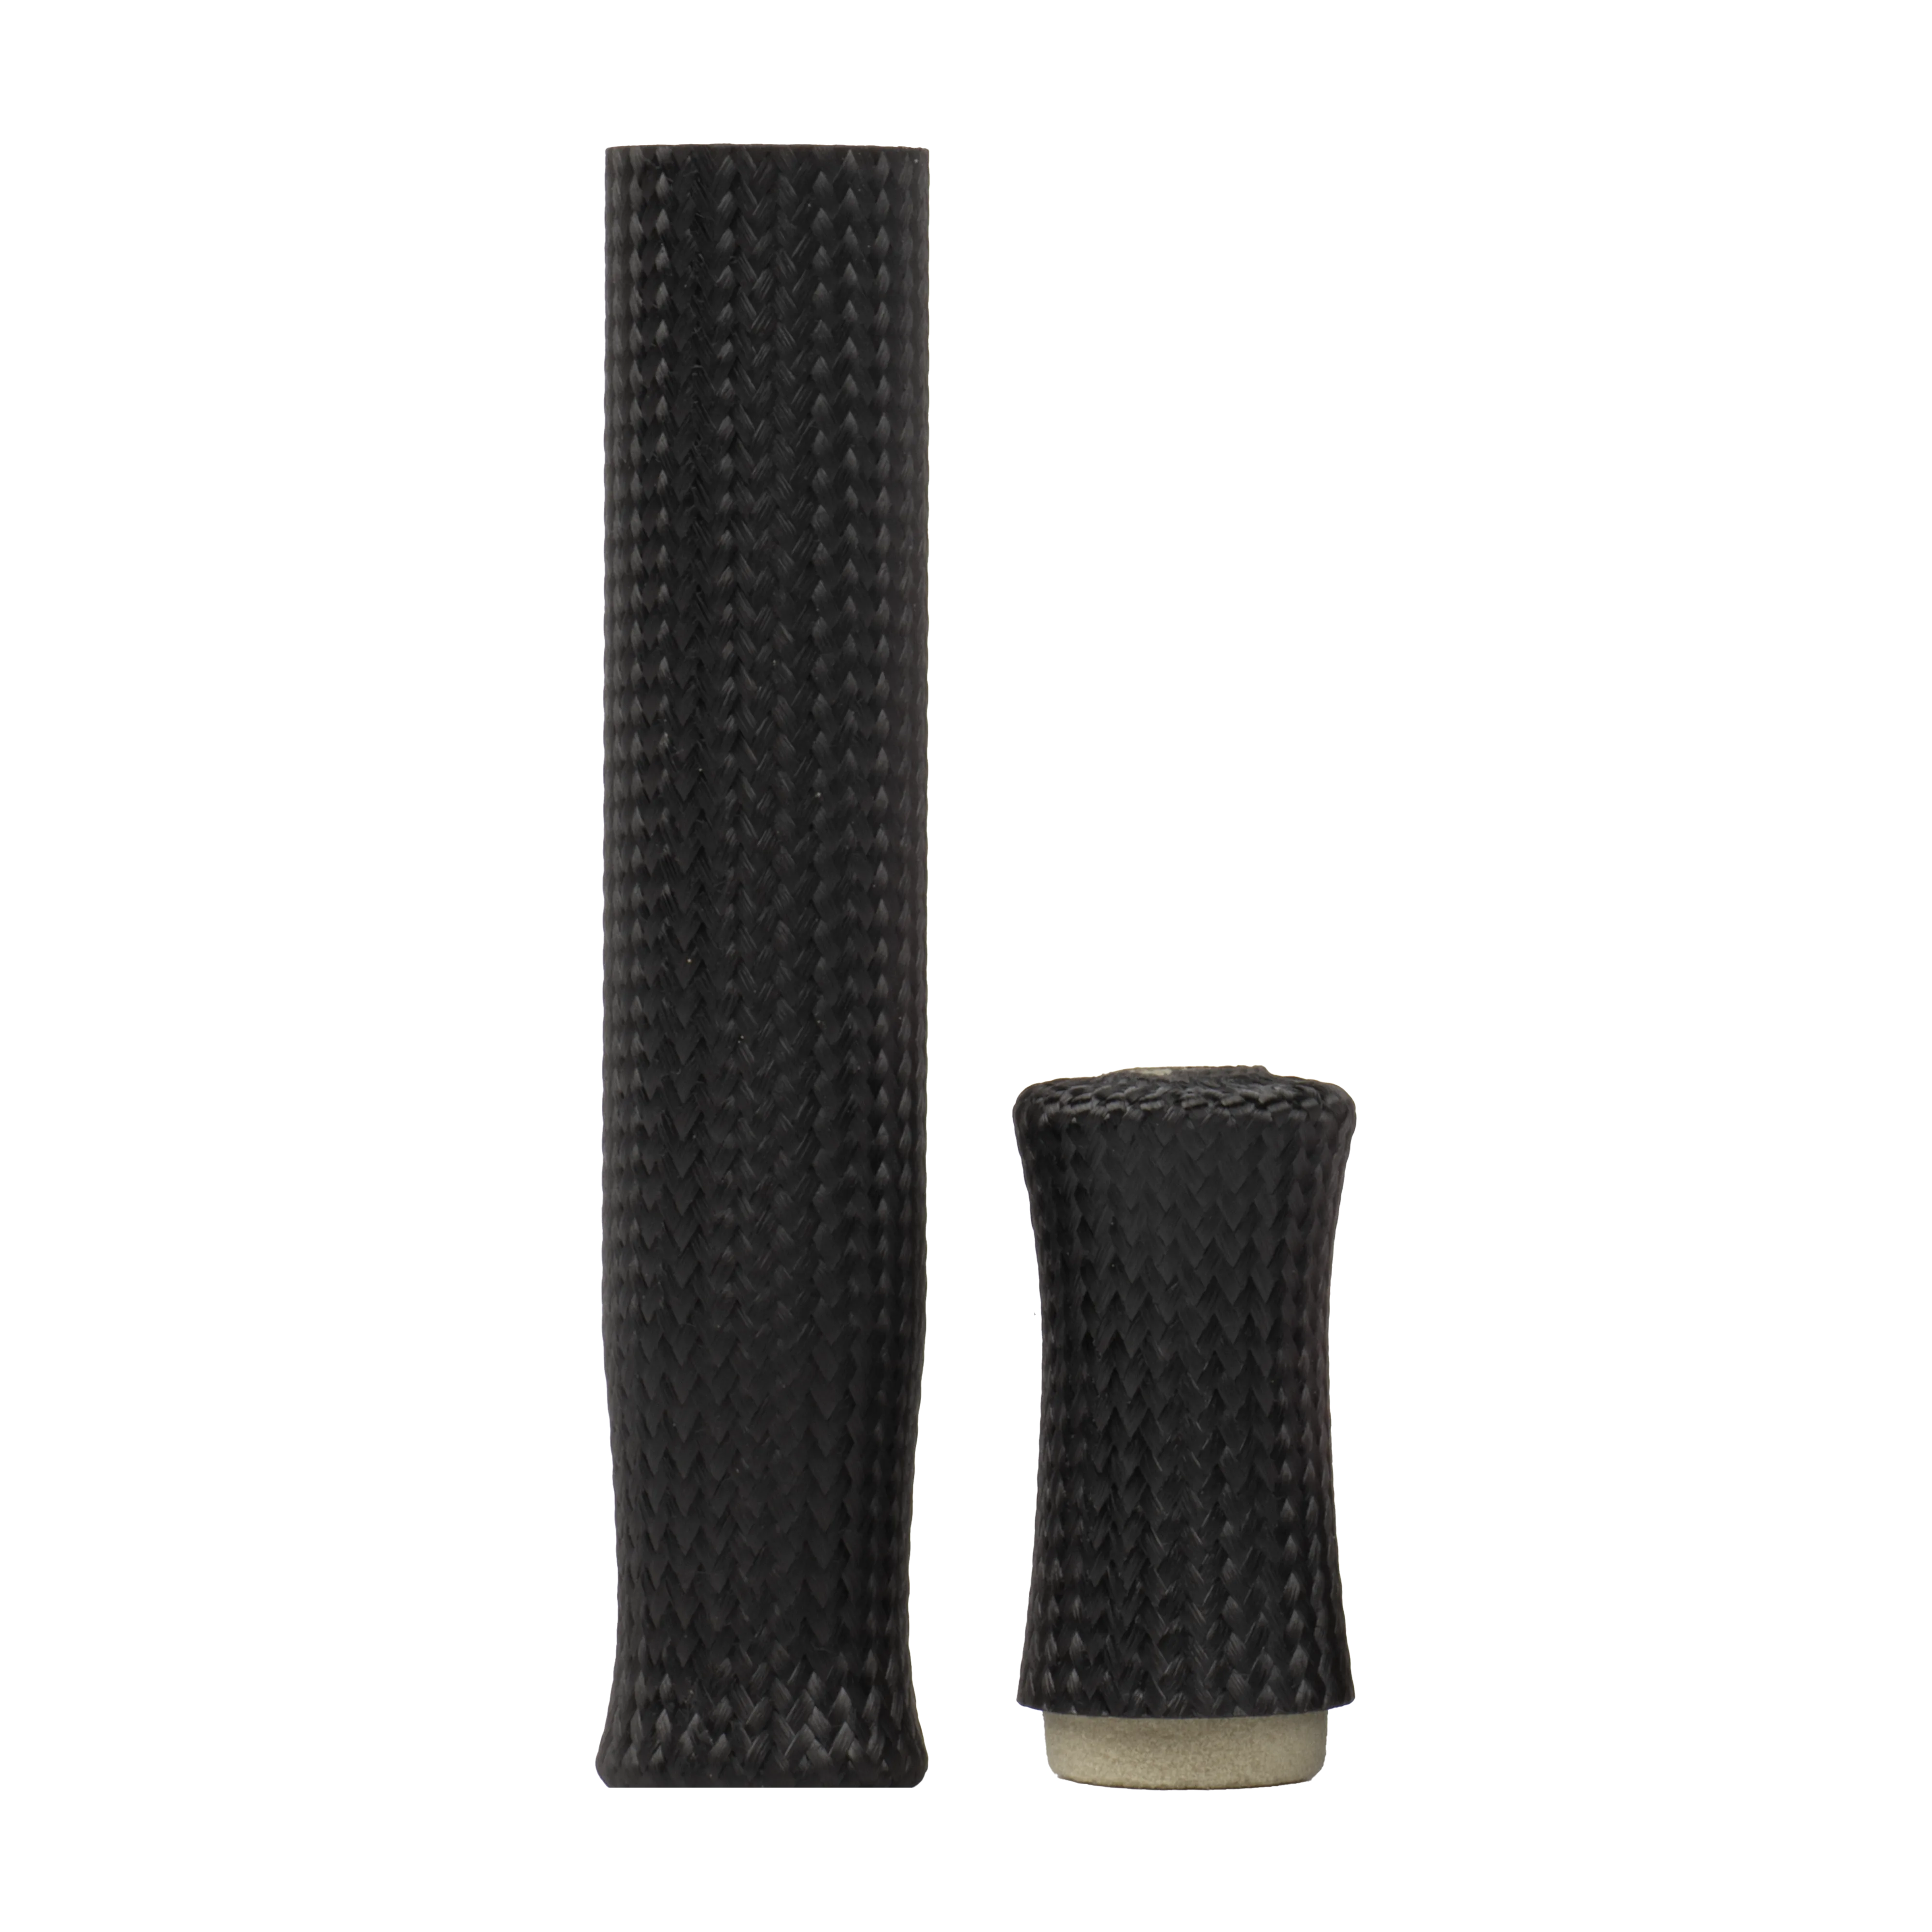 CFX 6.5" Ice Rod Grip Set for Slip Rings